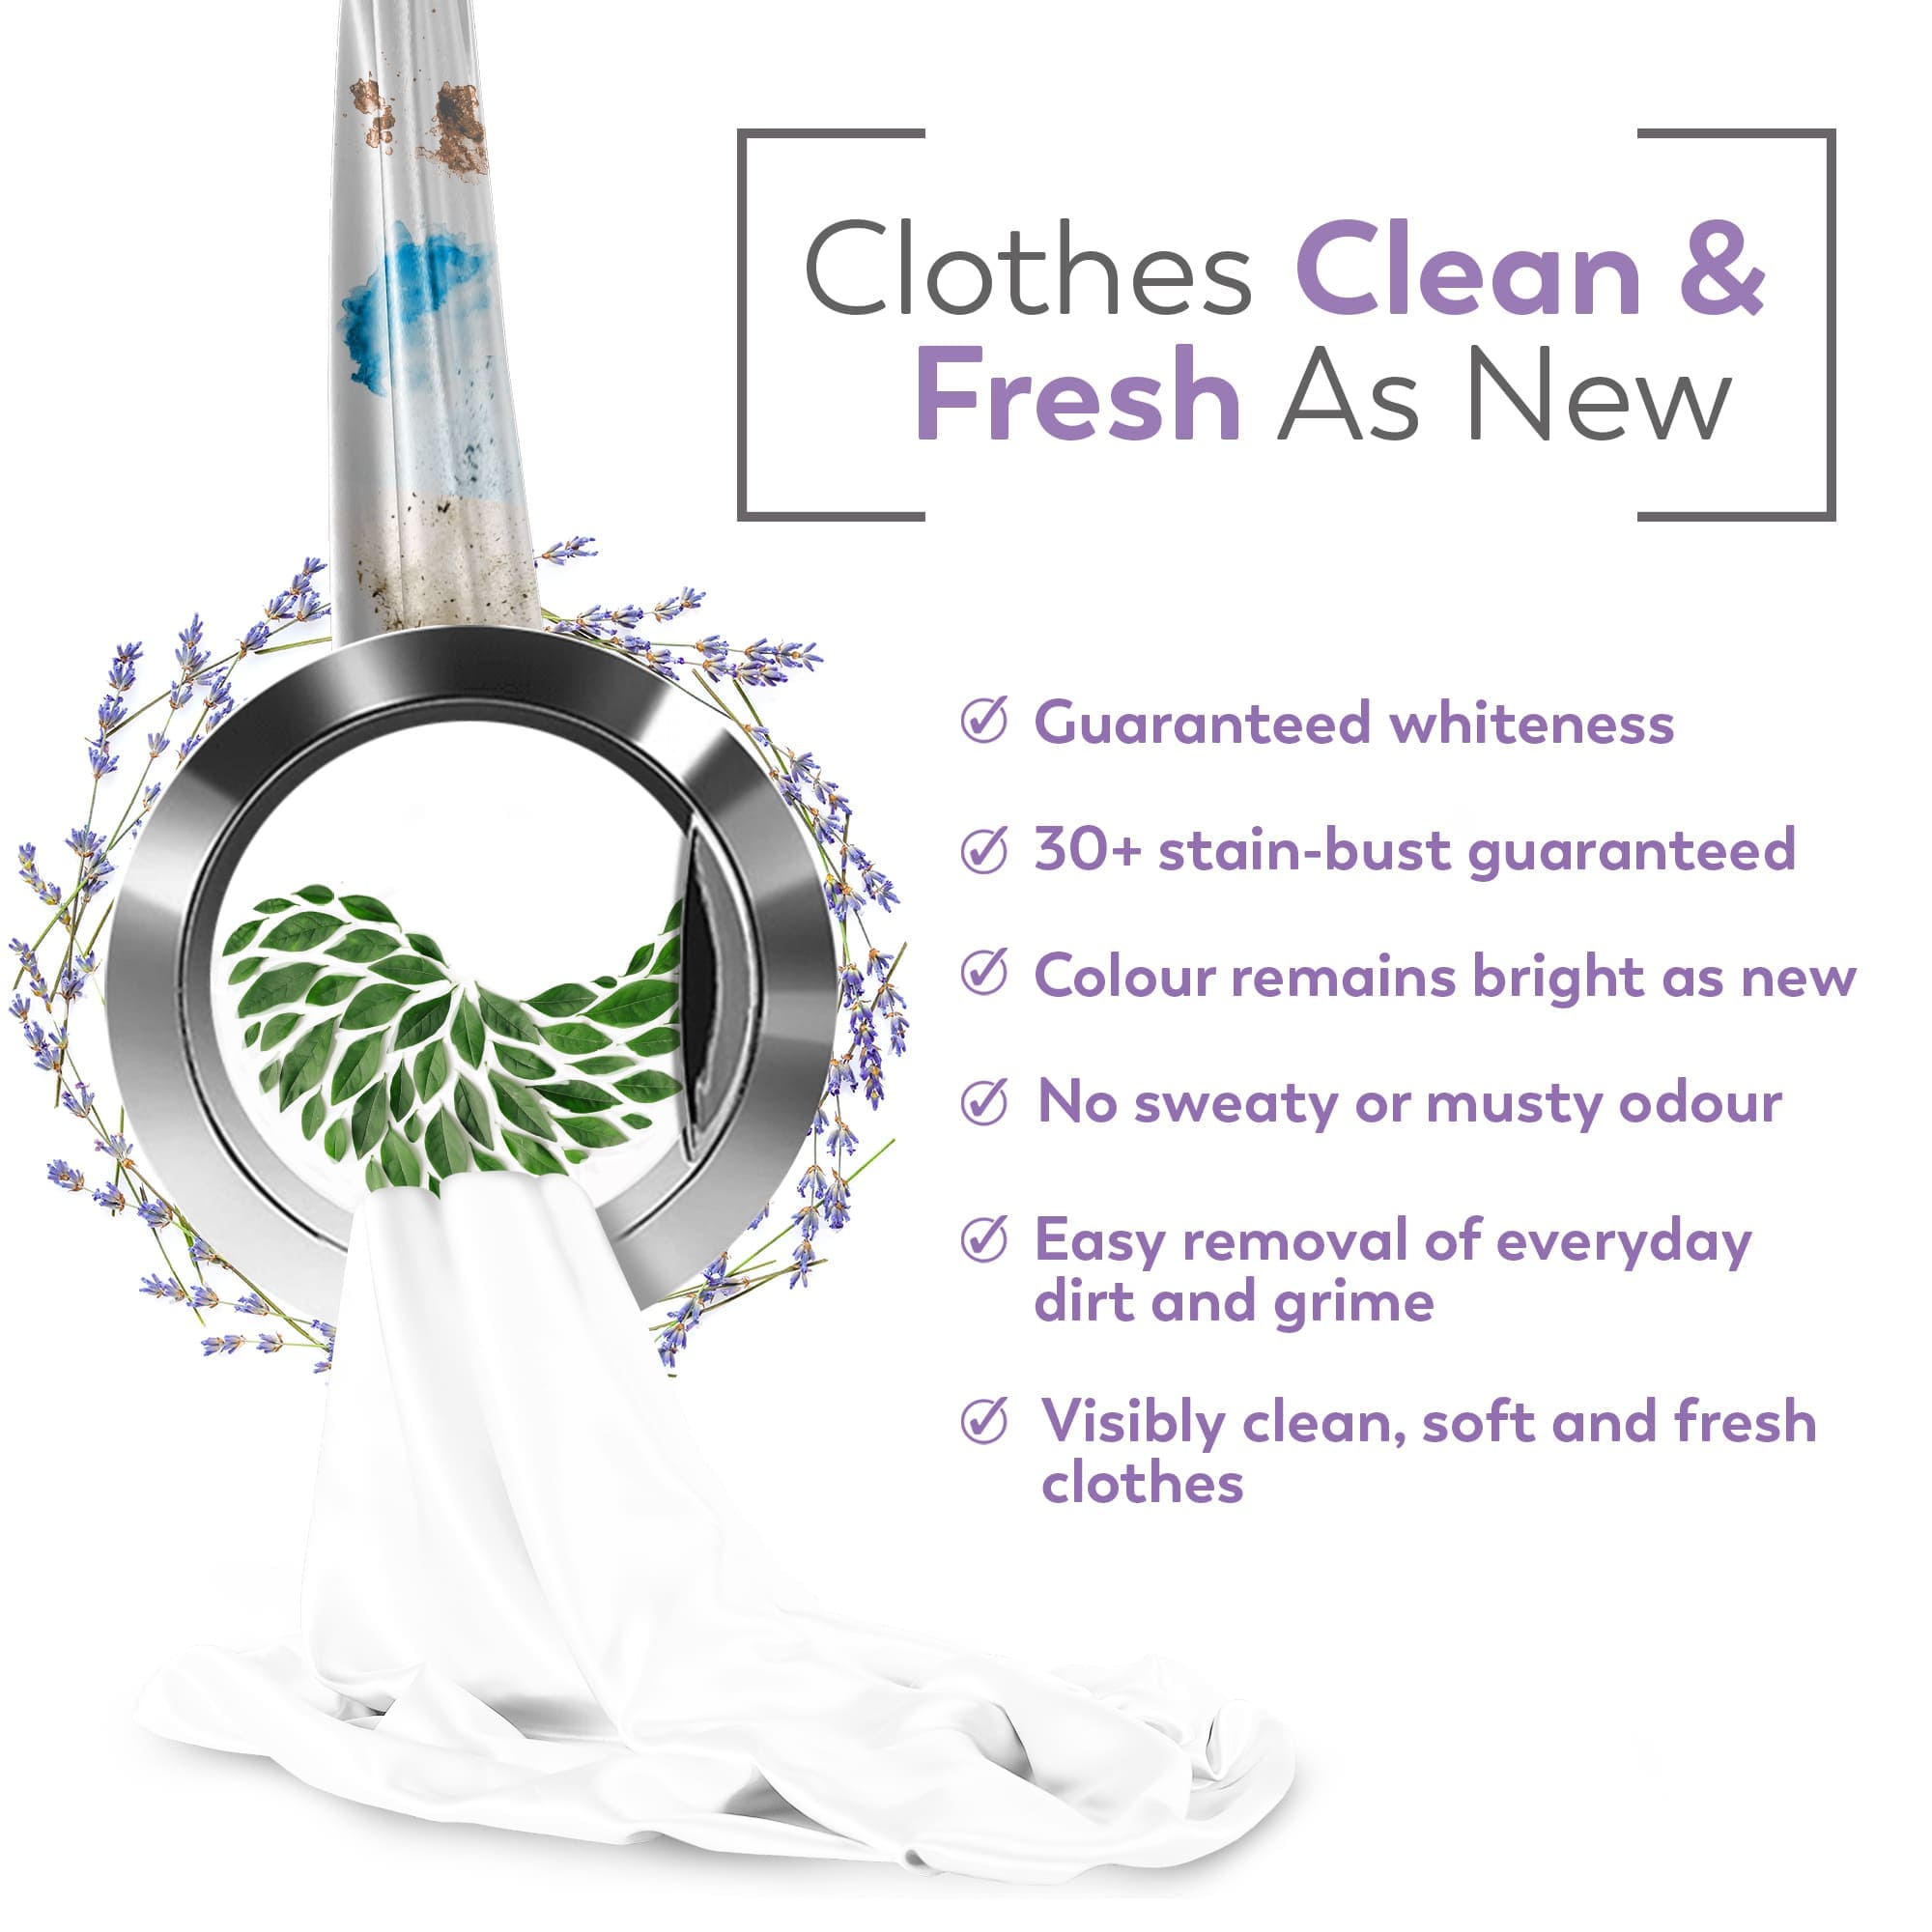 Liquid Detergent French Lavender 1000 ML + Dishwashing Gel Zesty Blast 500 ML + Floor Cleaner Floral Fresh 1000 ML + All Purpose Cleaner Lavender Lush 500 ML